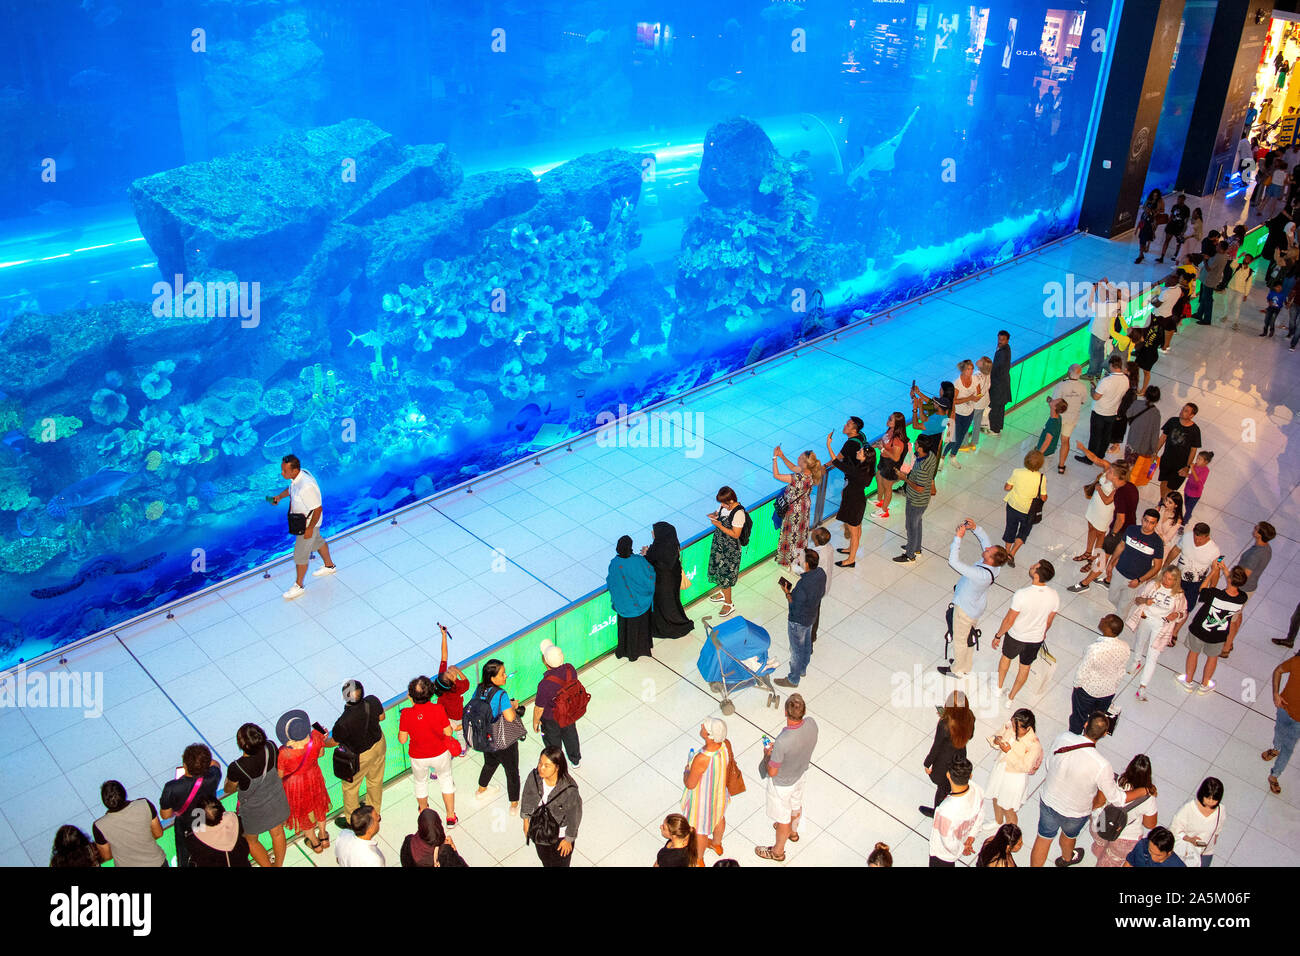 Dubaï / Emirats Arabes Unis - le 19 octobre 2019 : immense aquarium à Dubaï Mall avec foule de touristes. Le plus grand centre commercial au monde. Aquarium. Banque D'Images